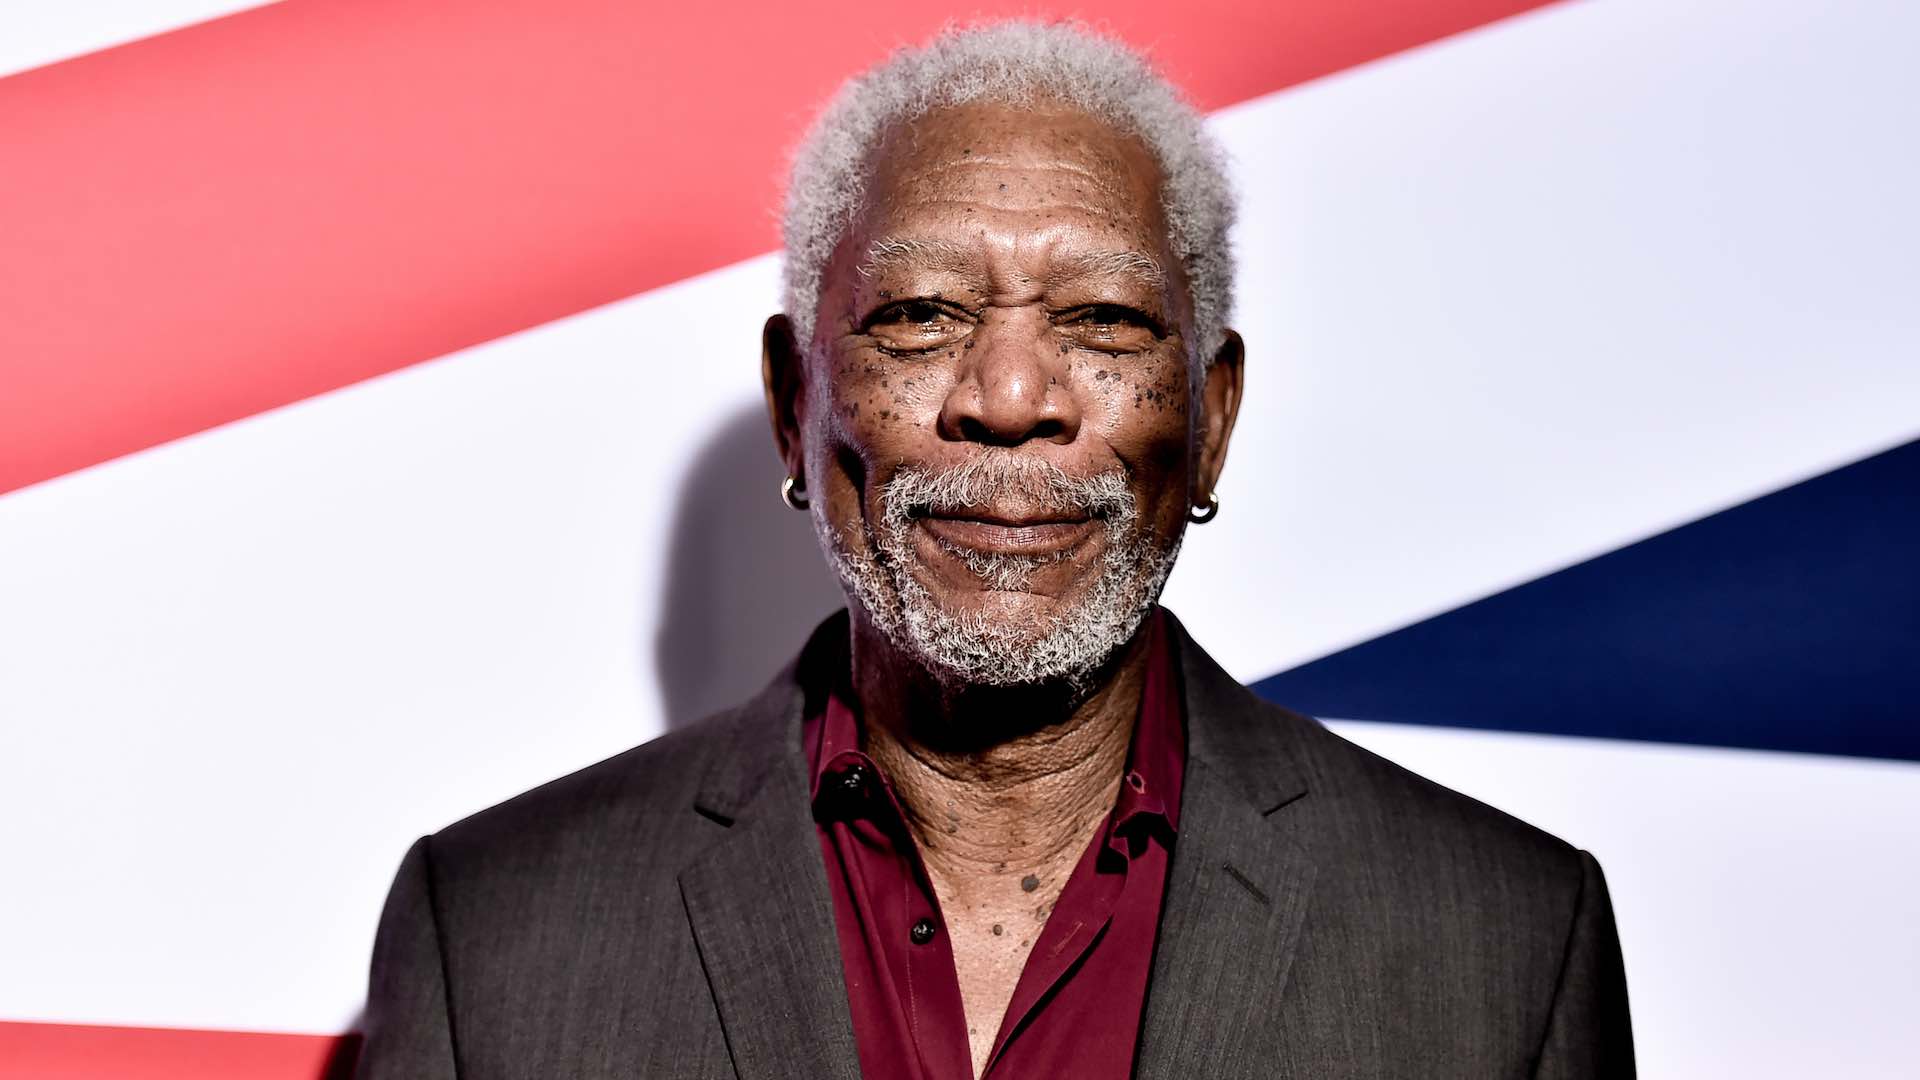 Morgan Freeman reitera sus disculpas y asegura que no agredió a ninguna mujer